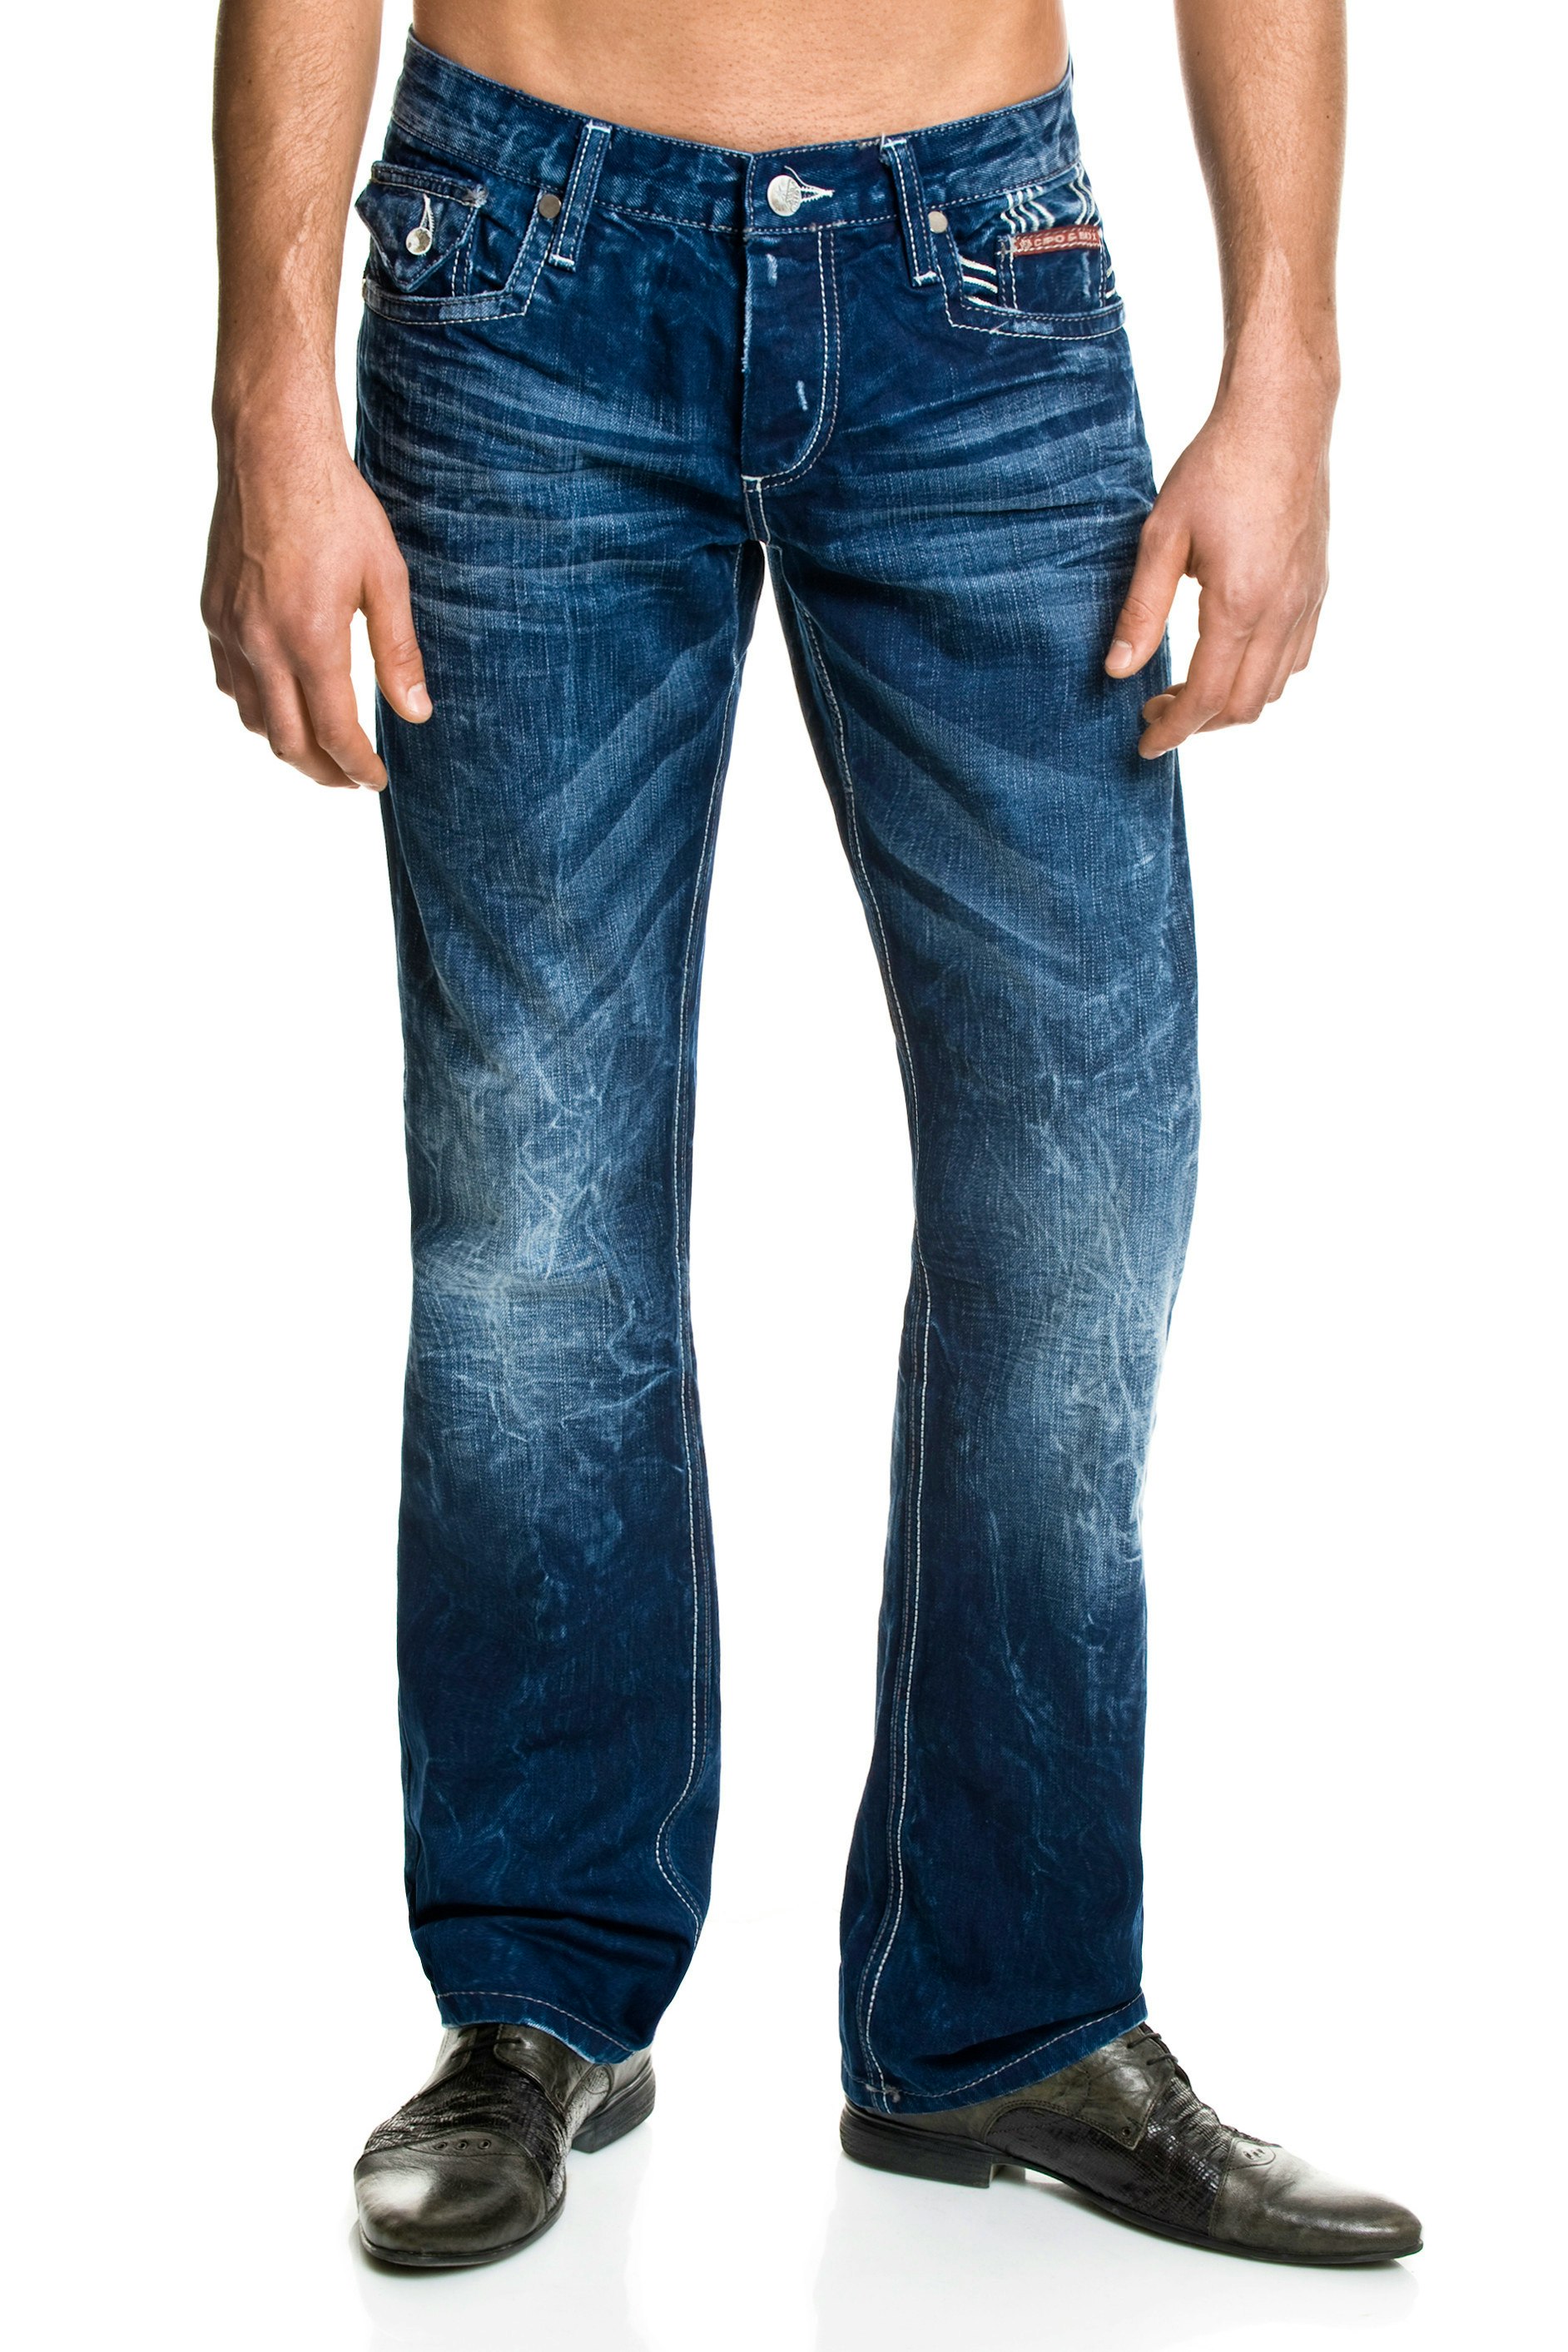 Cipo & Baxx Jeans C-0781